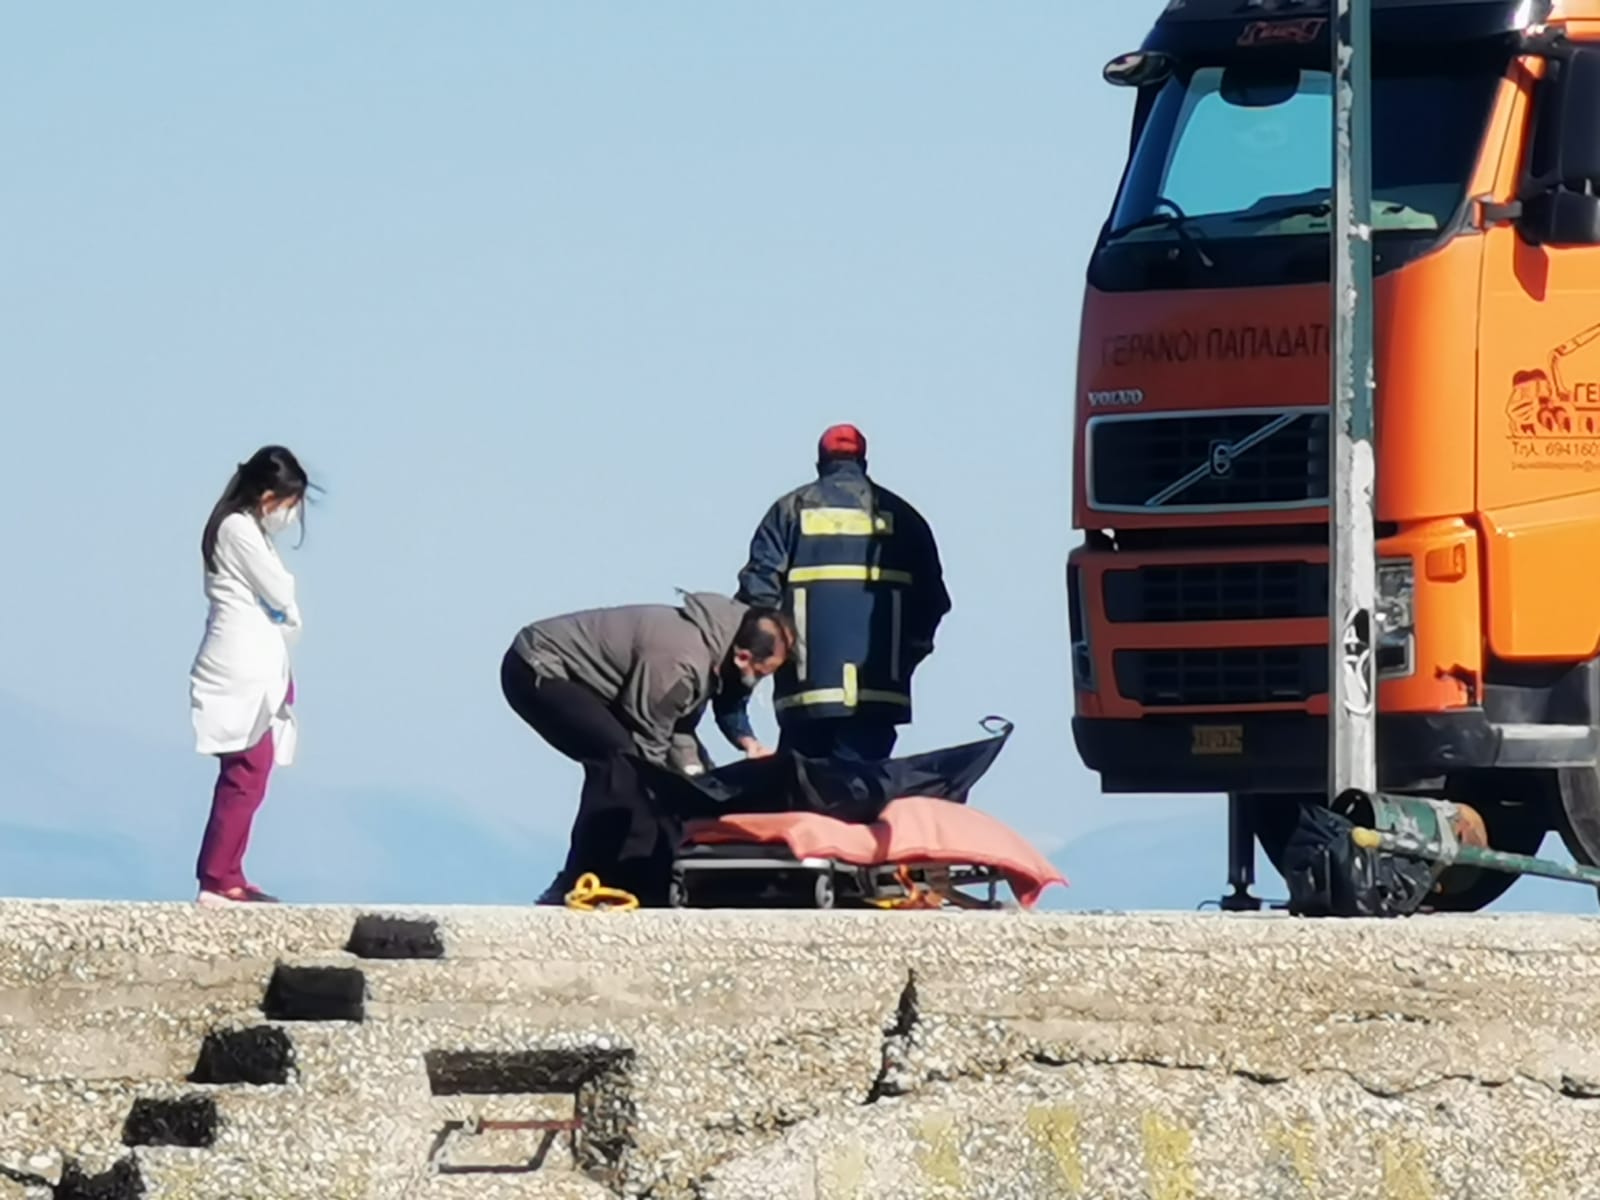 50χρονη γυναίκα η οδηγός που έπεσε στο λιμάνι του Πόρου  Ολοκληρώθηκε η ανάσυρηση [εικόνες +βίντεο]